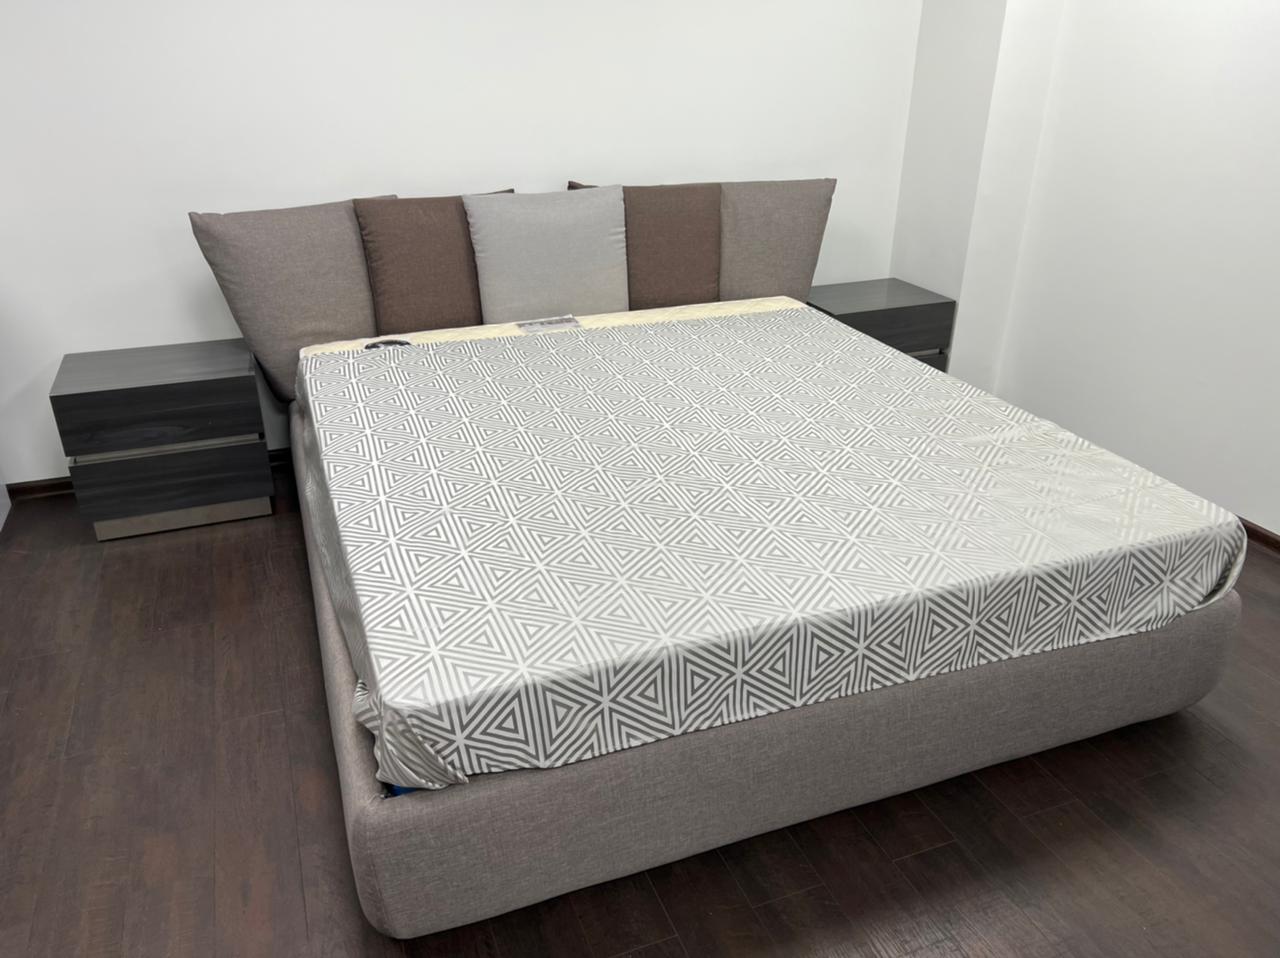 Итальянская кровать Ninfea в комплекте с тумбочками и основанием для матраса фабрики MARONESE